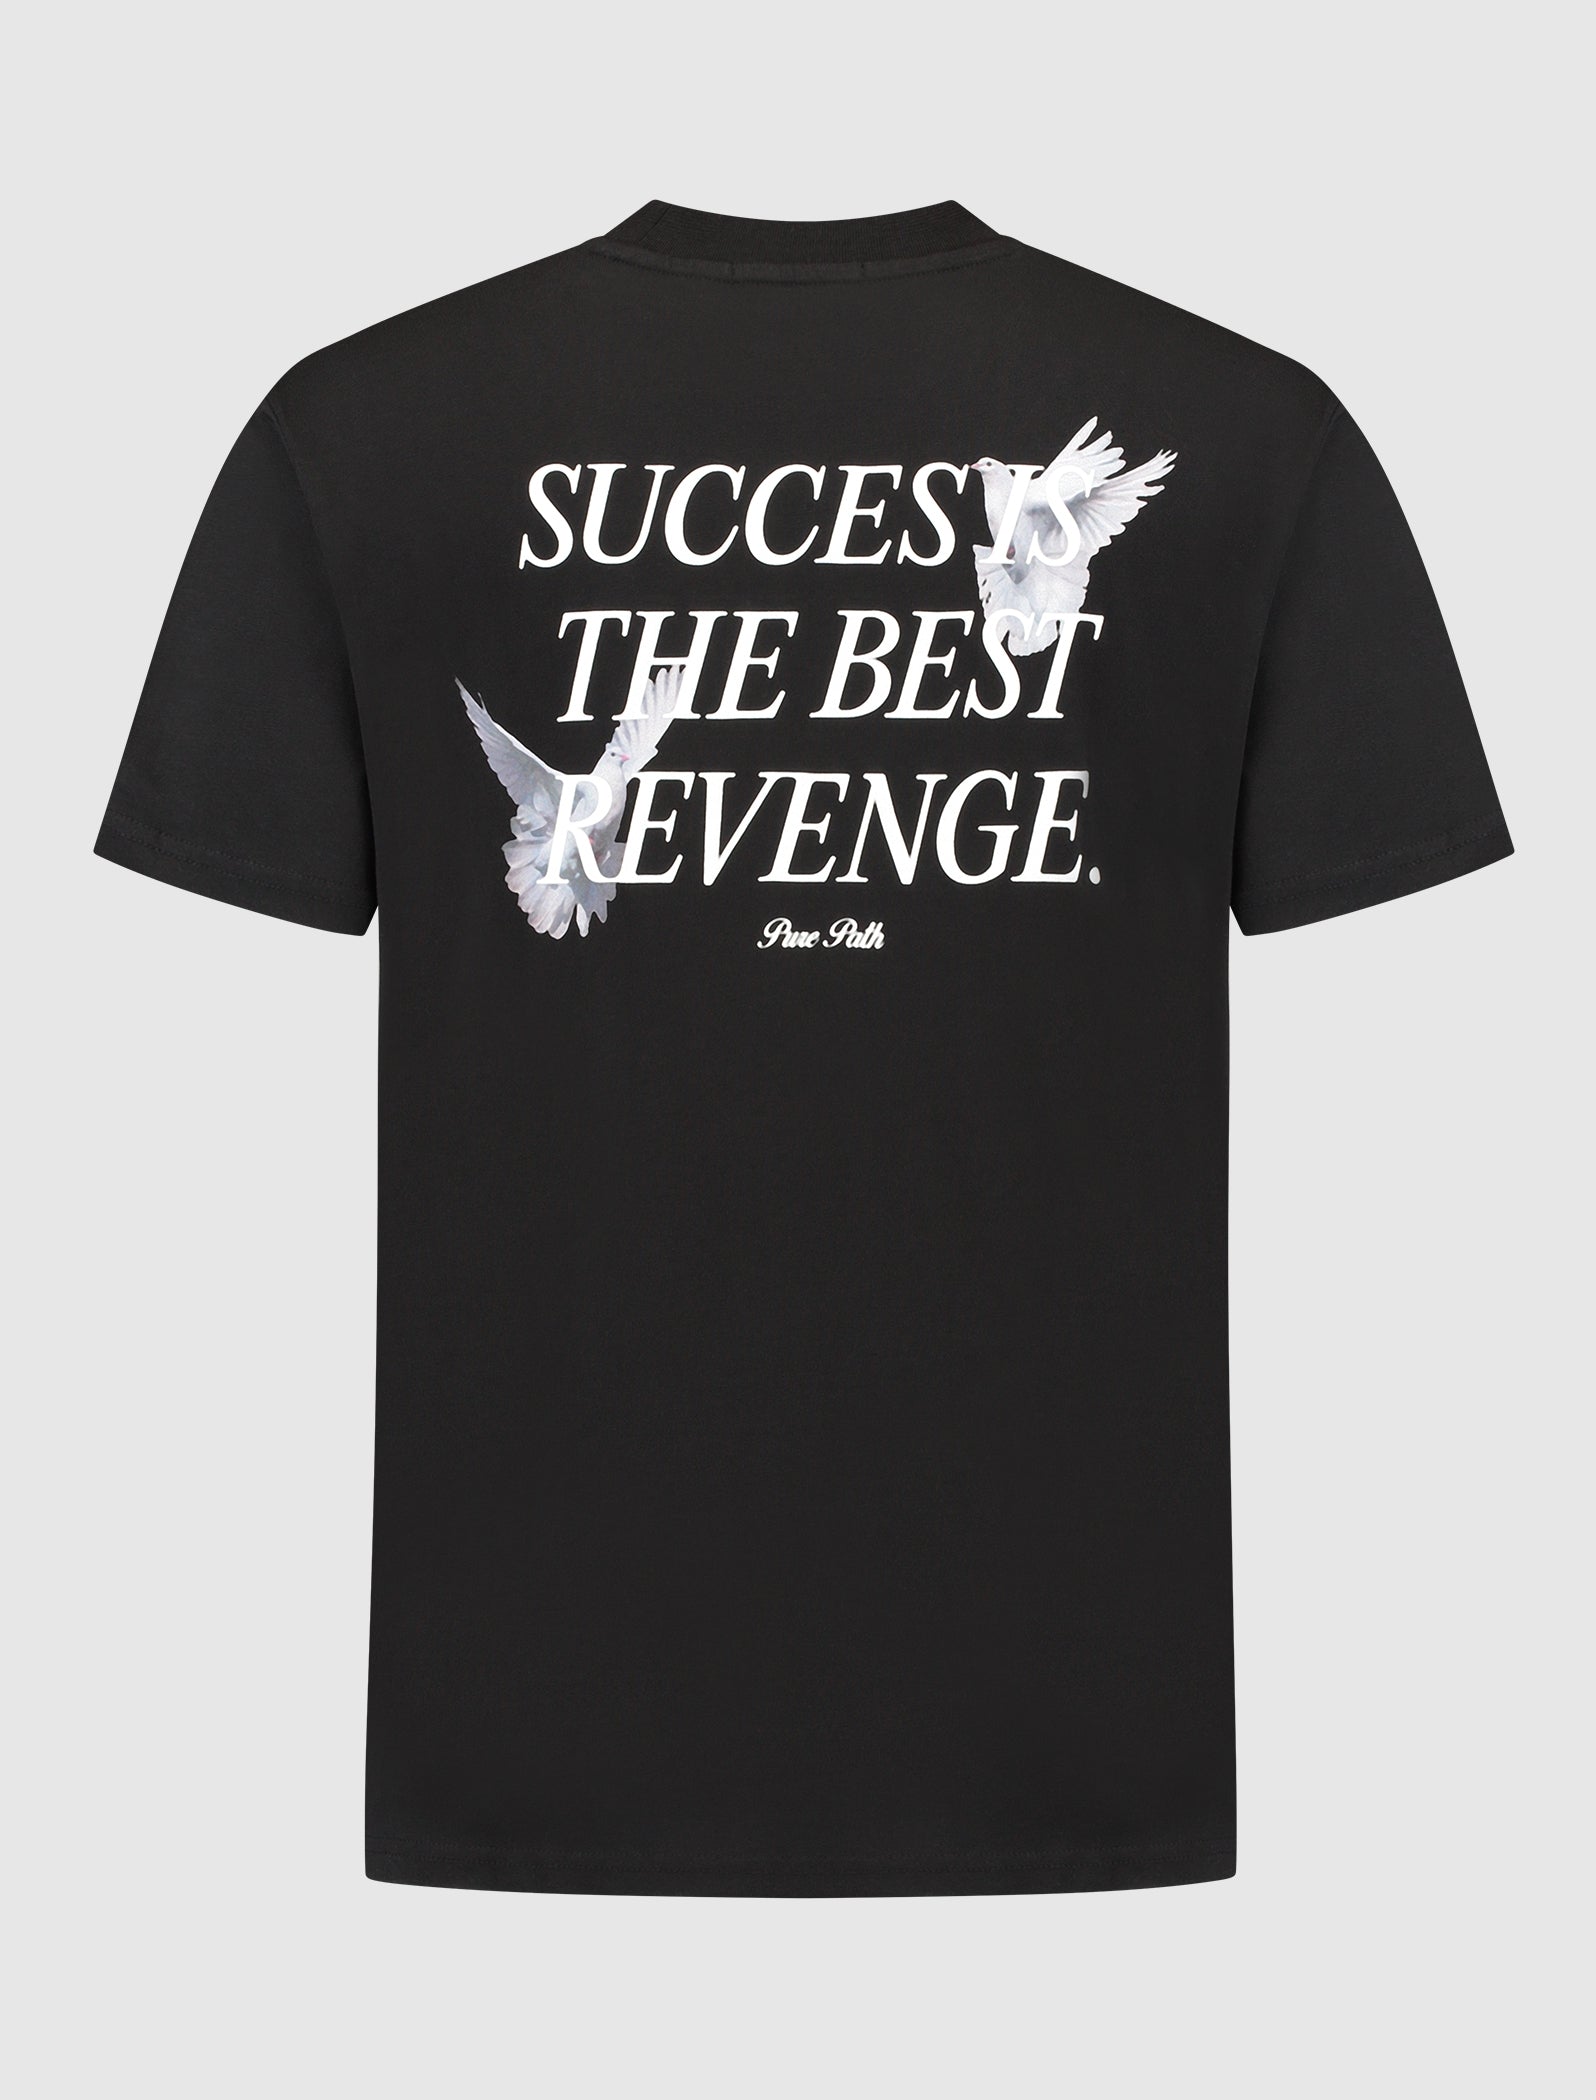 The Best Revenge T-shirt | Black